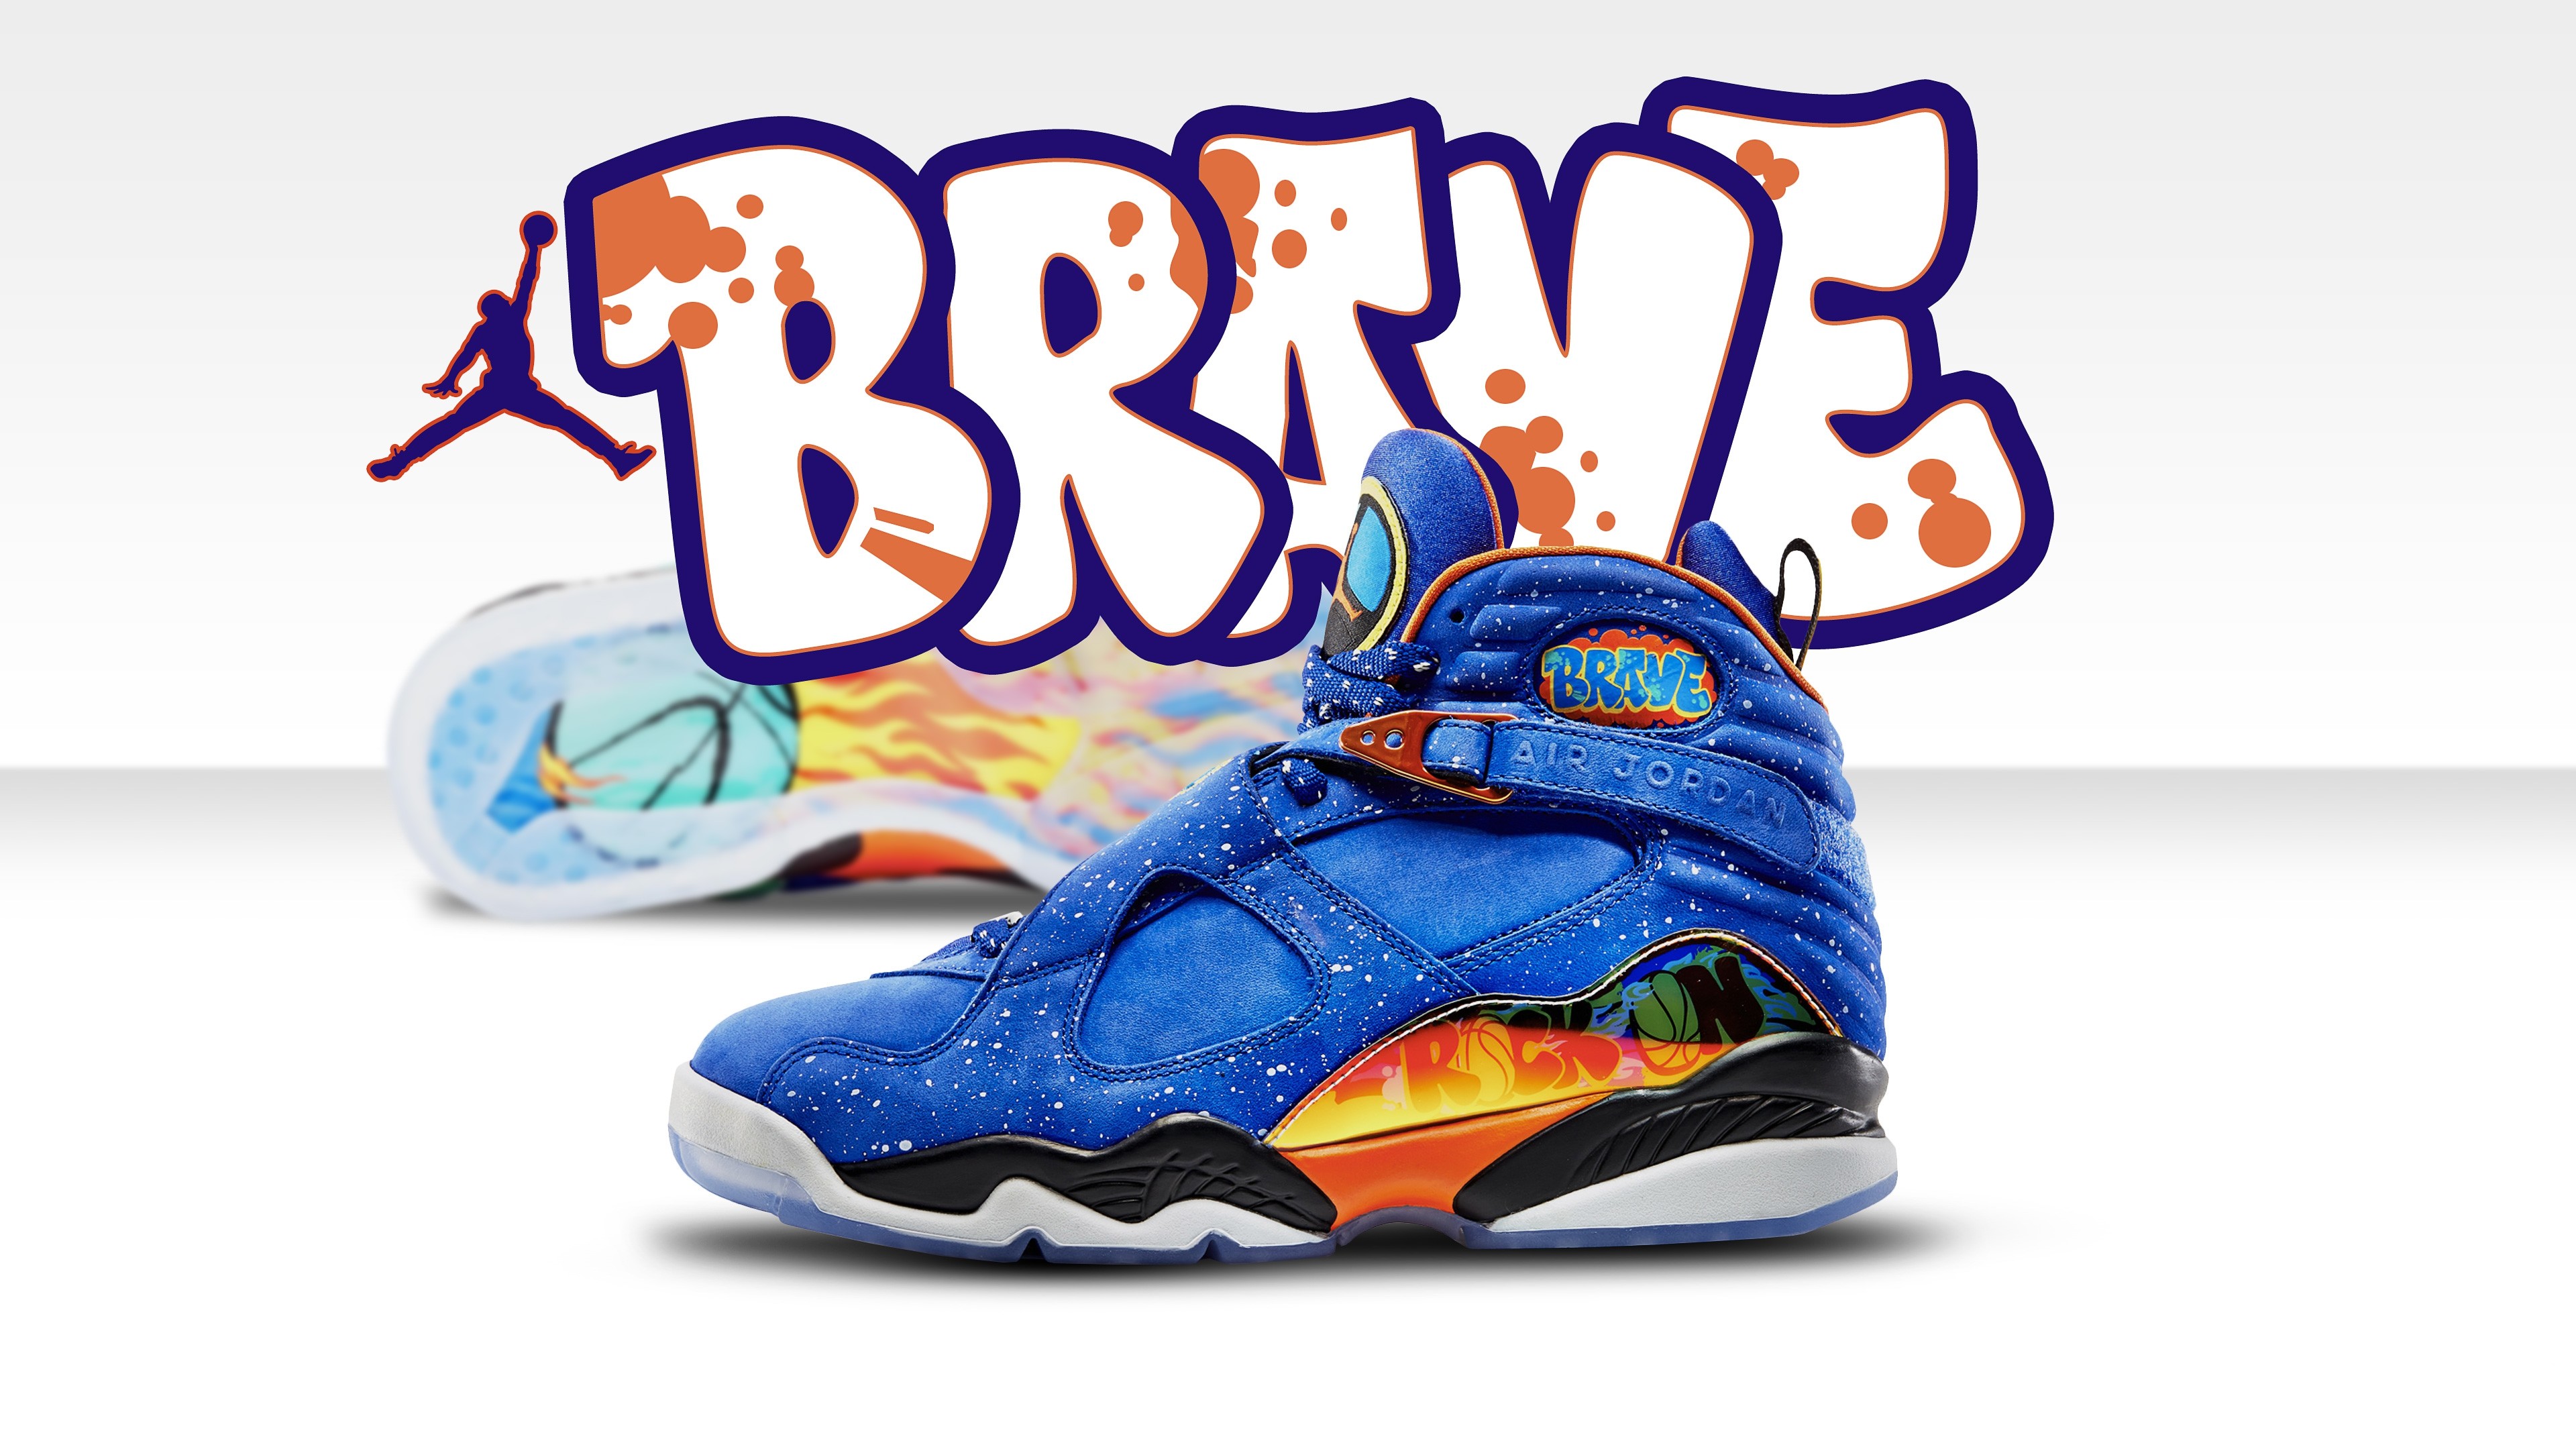 fonds d'écran de chaussures cool,chaussure,chaussure,bleu,orange,bleu électrique